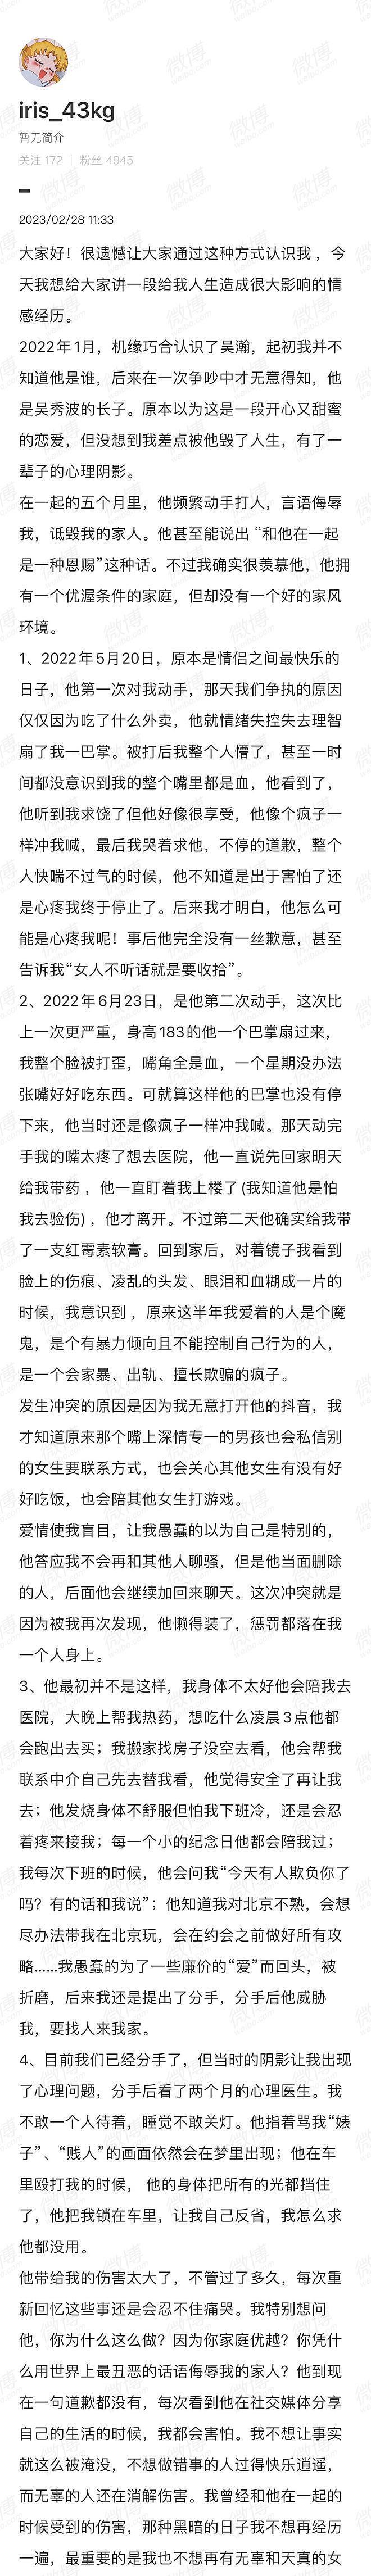 妇联回应吴秀波儿子施暴 称若收到求助会立即介入 - 7